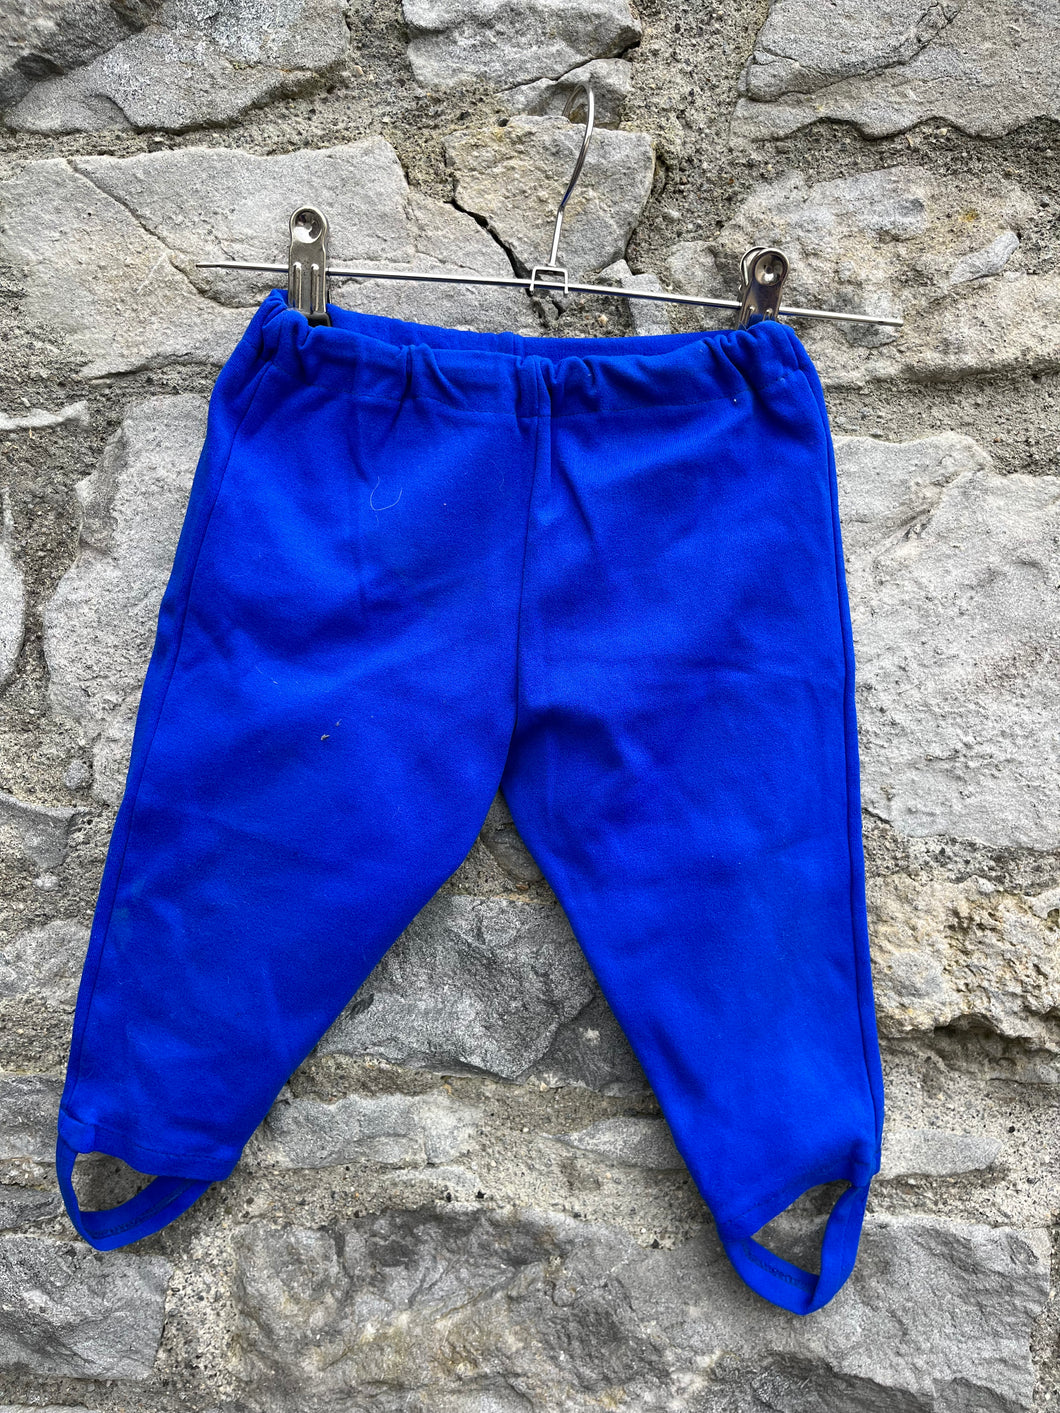 70s blue pants  9-12m (74-80cm)